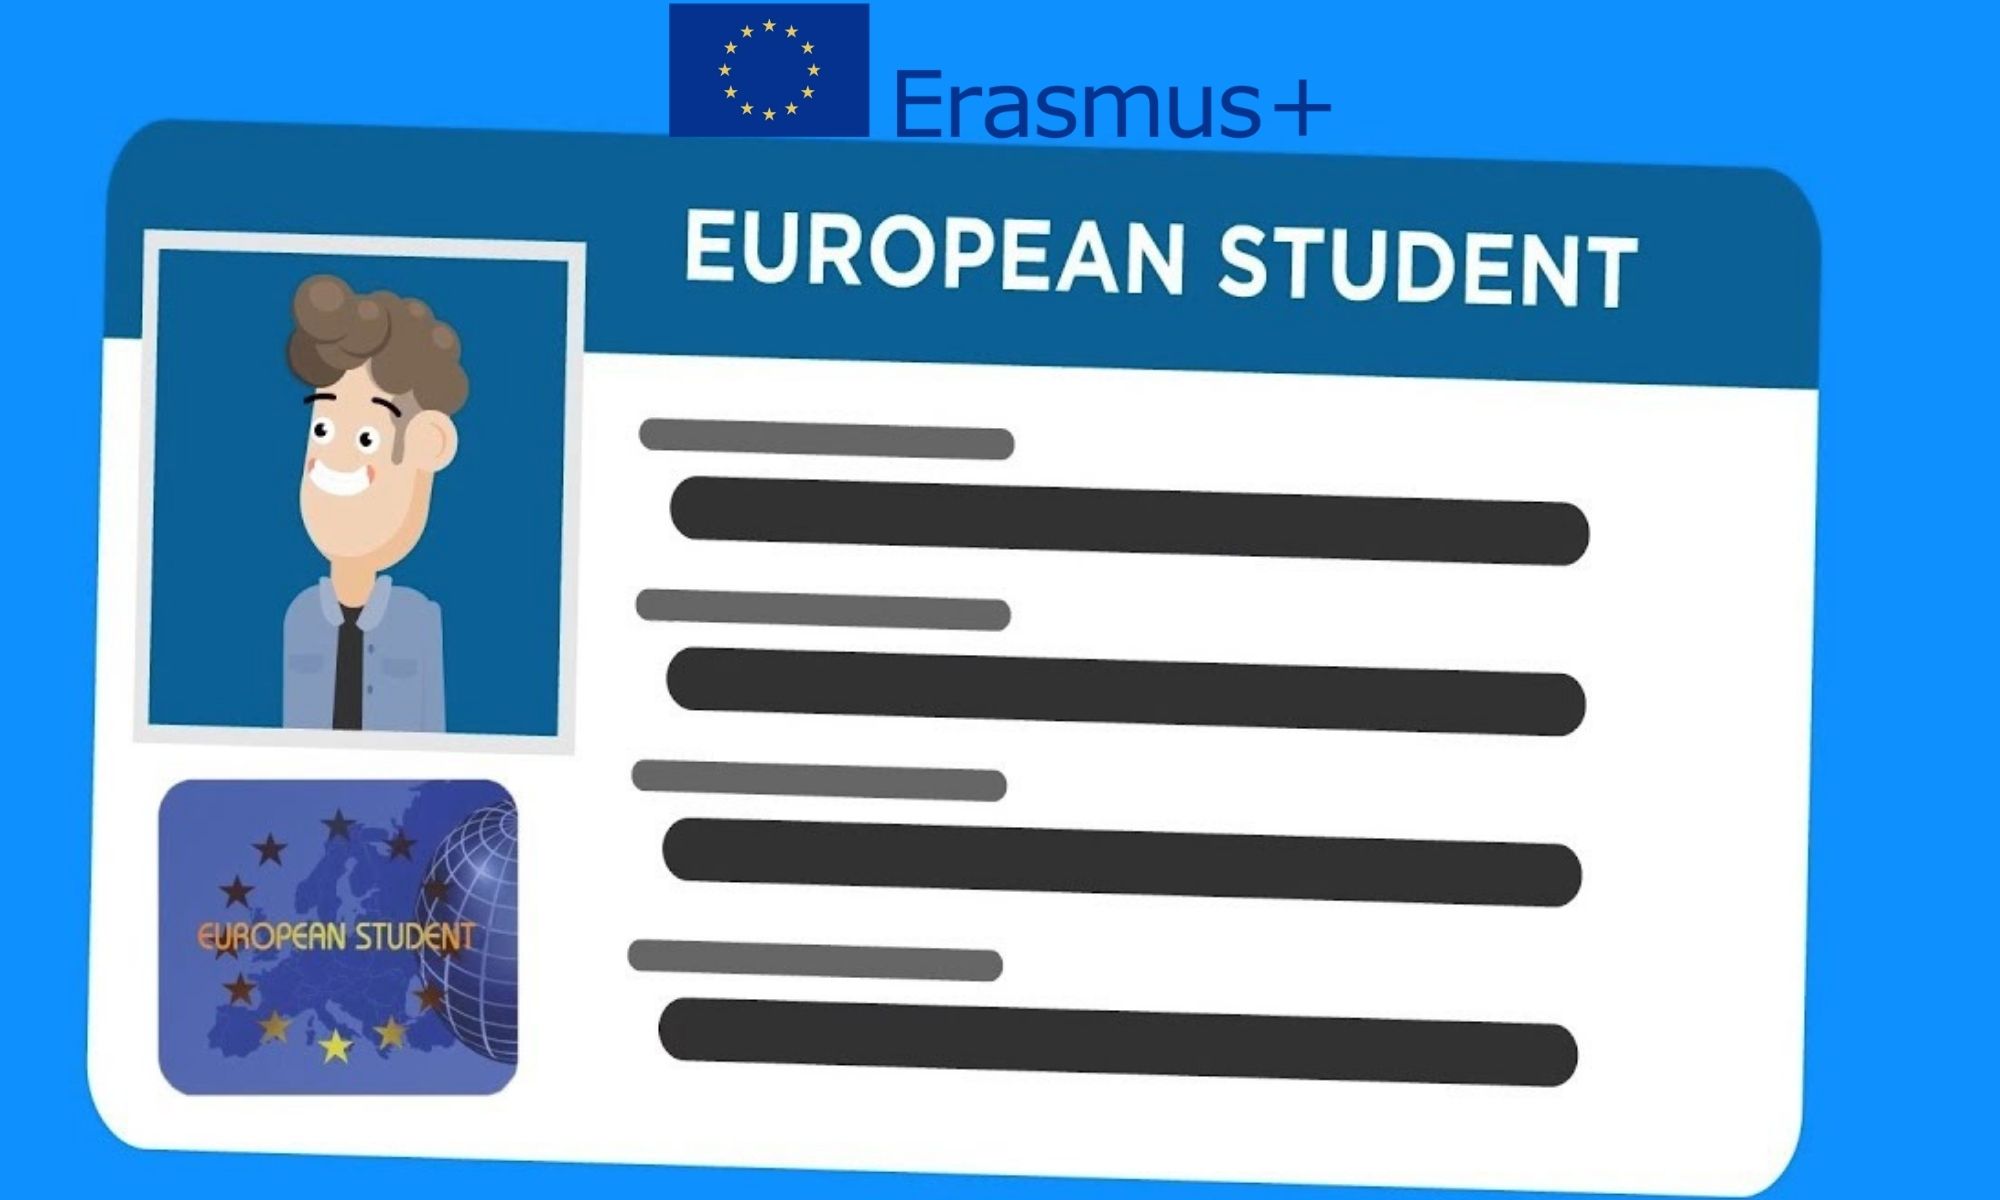 Ton appli Erasmus+ maintenant avec ta carte d'étudiant européenne